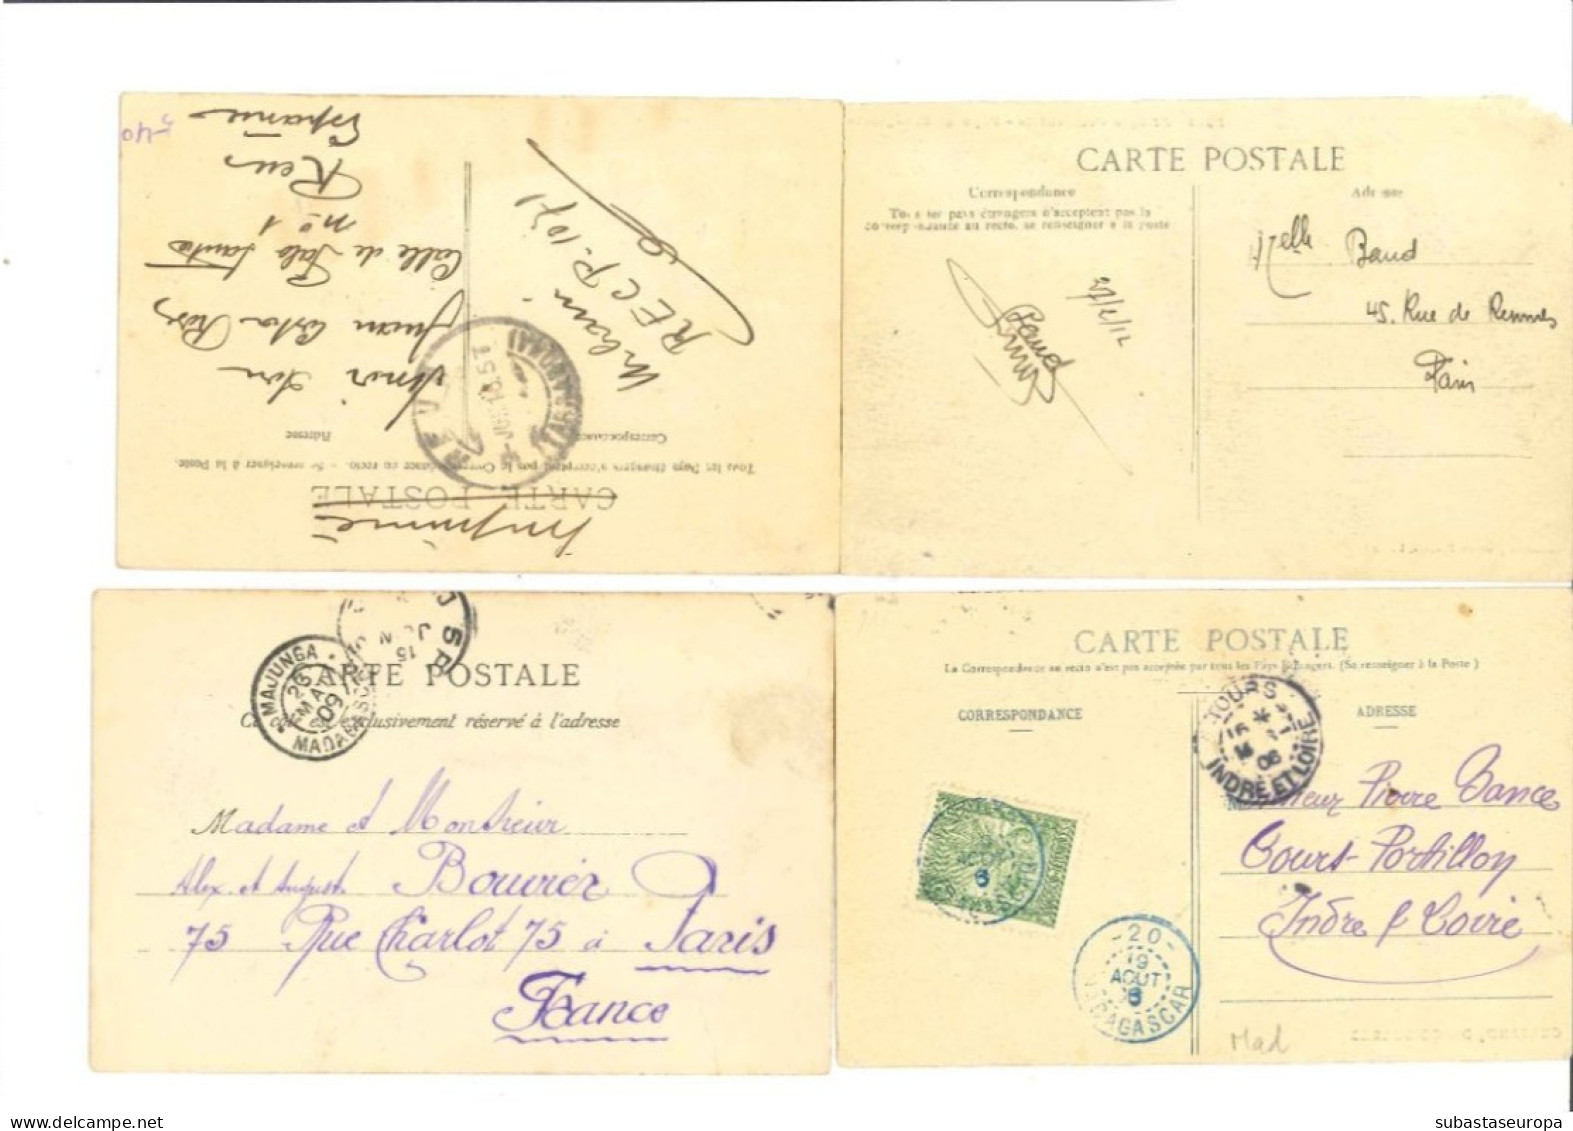 Lot de 24 cartes postales d'époque coloniale. Entre les années 1904 et 1939. Très jolies.